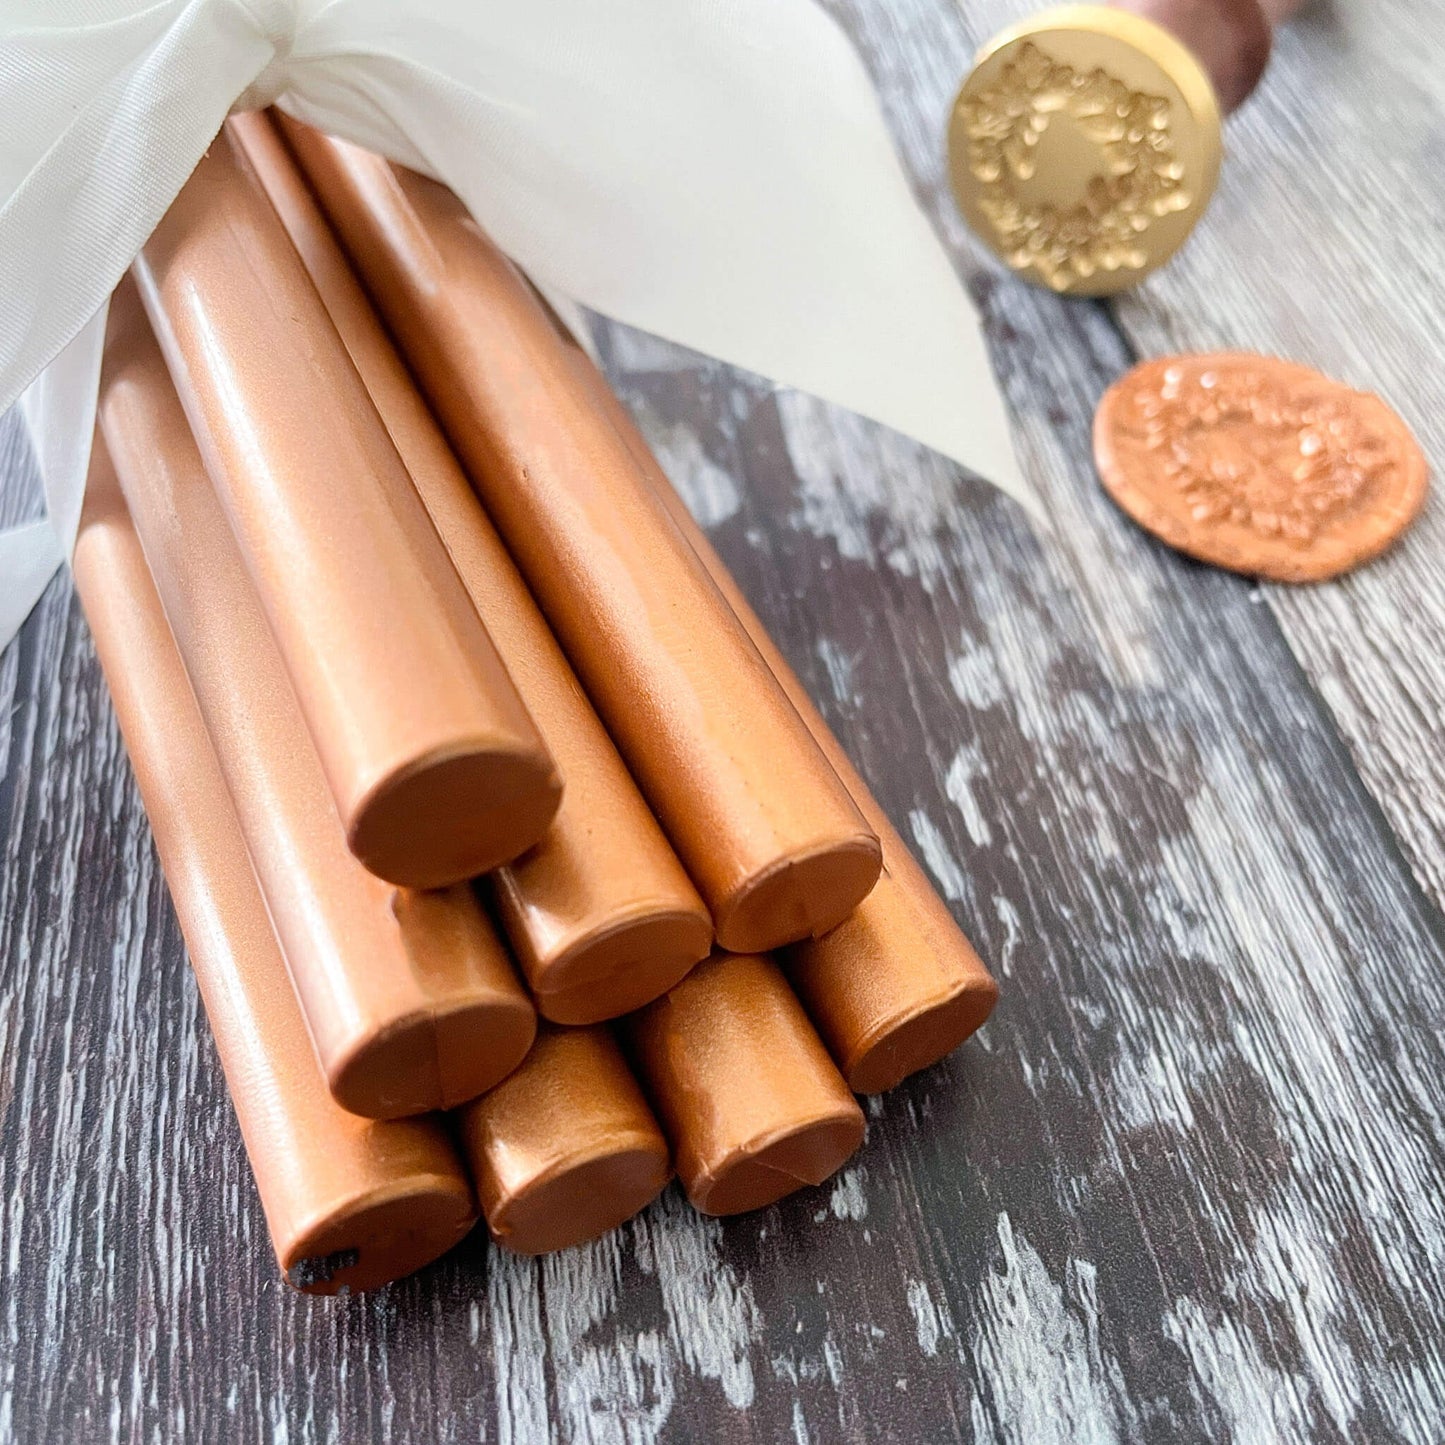 copper-sealing-wax-sticks